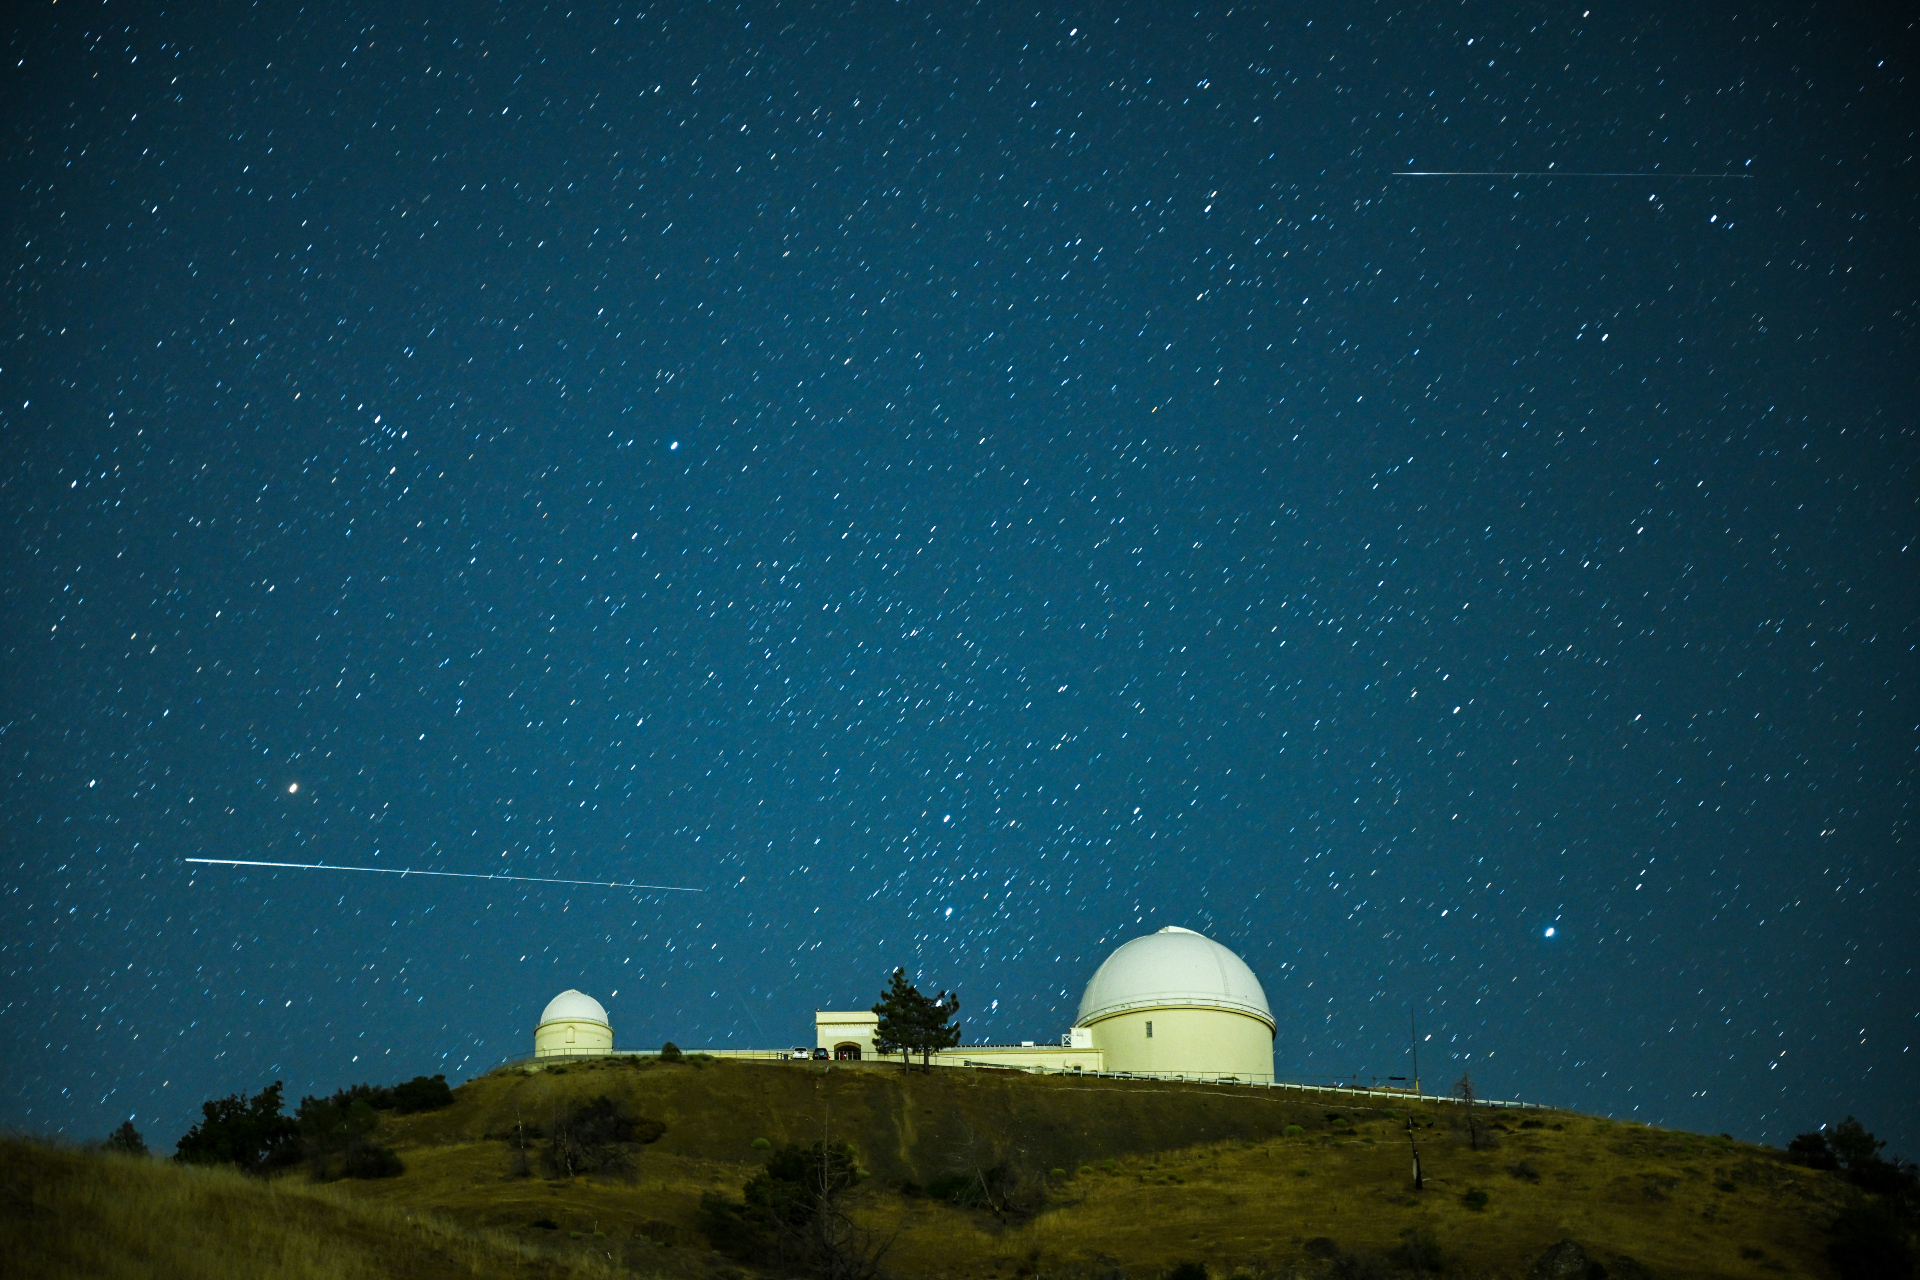 Un lungo treno bianco della meteora delle Perseidi passa sopra la struttura a cupola dell'Osservatorio del Lago in direzione orizzontale contro un cielo stellato.